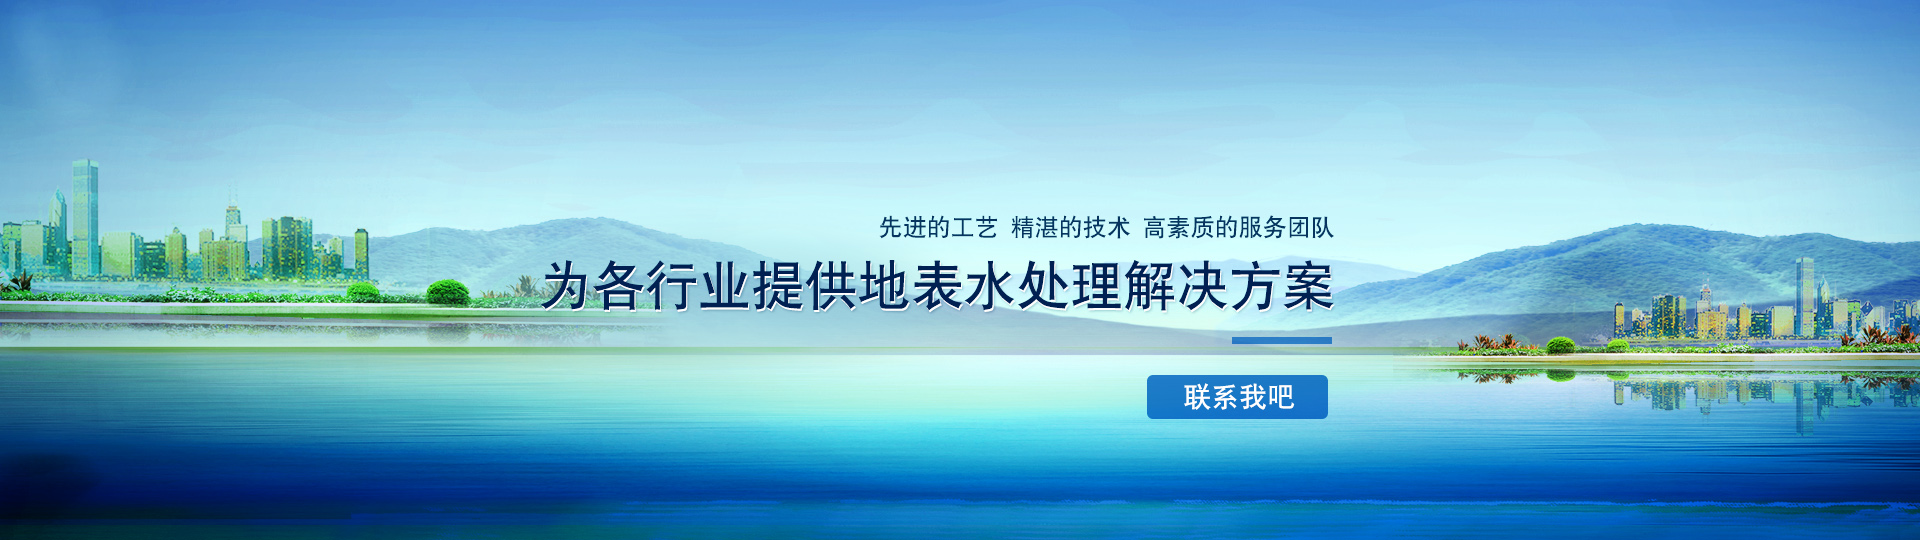 广州纵康泳池设备有限公司